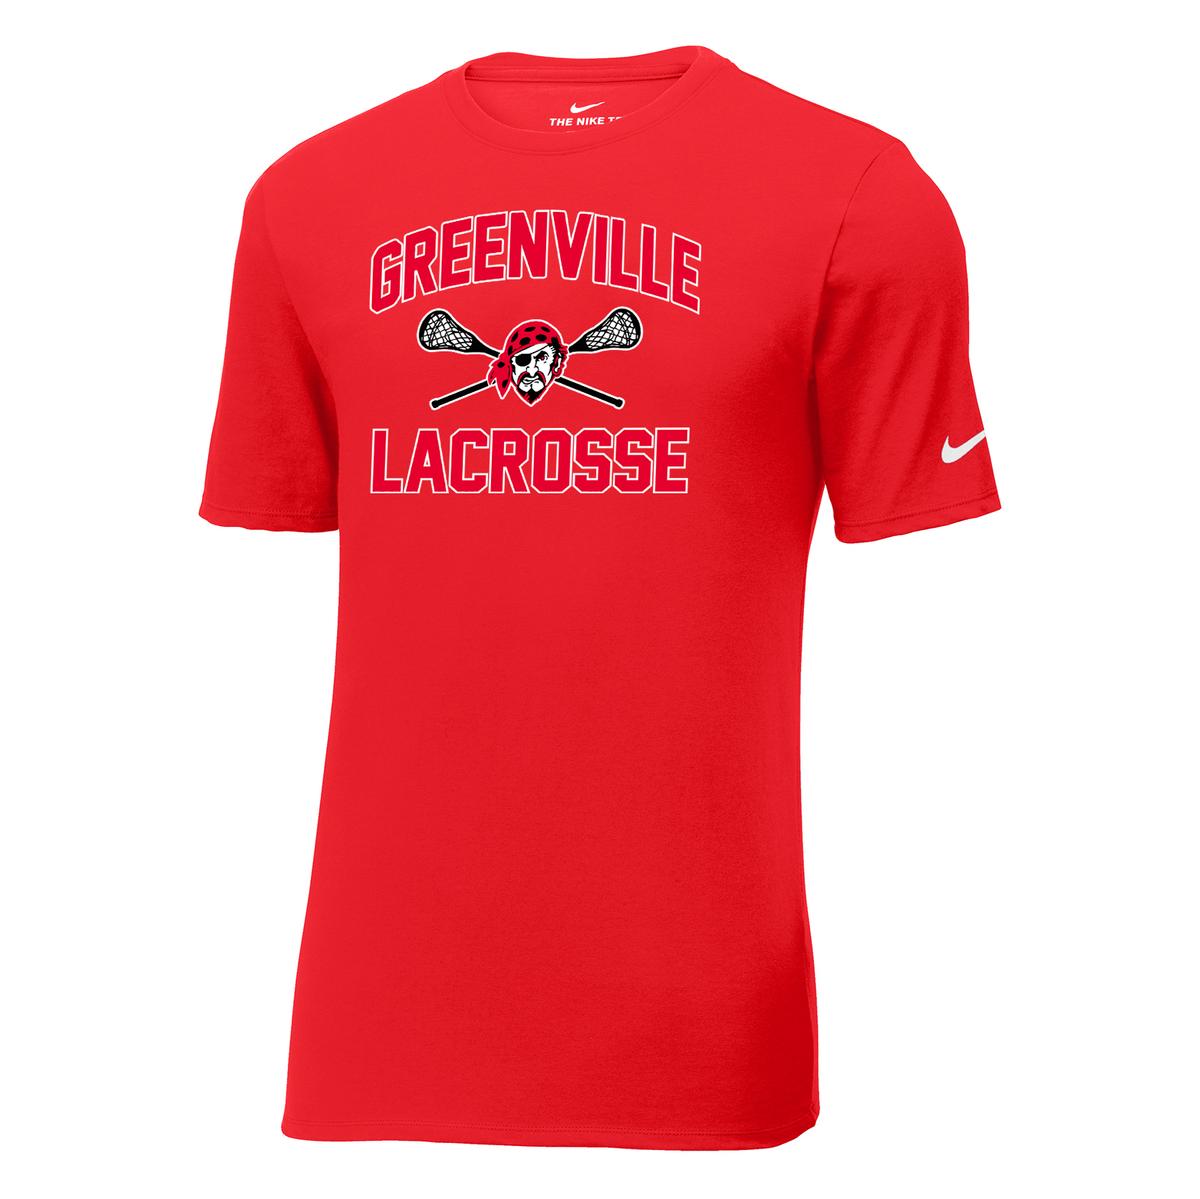 Greenville Girls Lacrosse Nike Core Cotton Tee